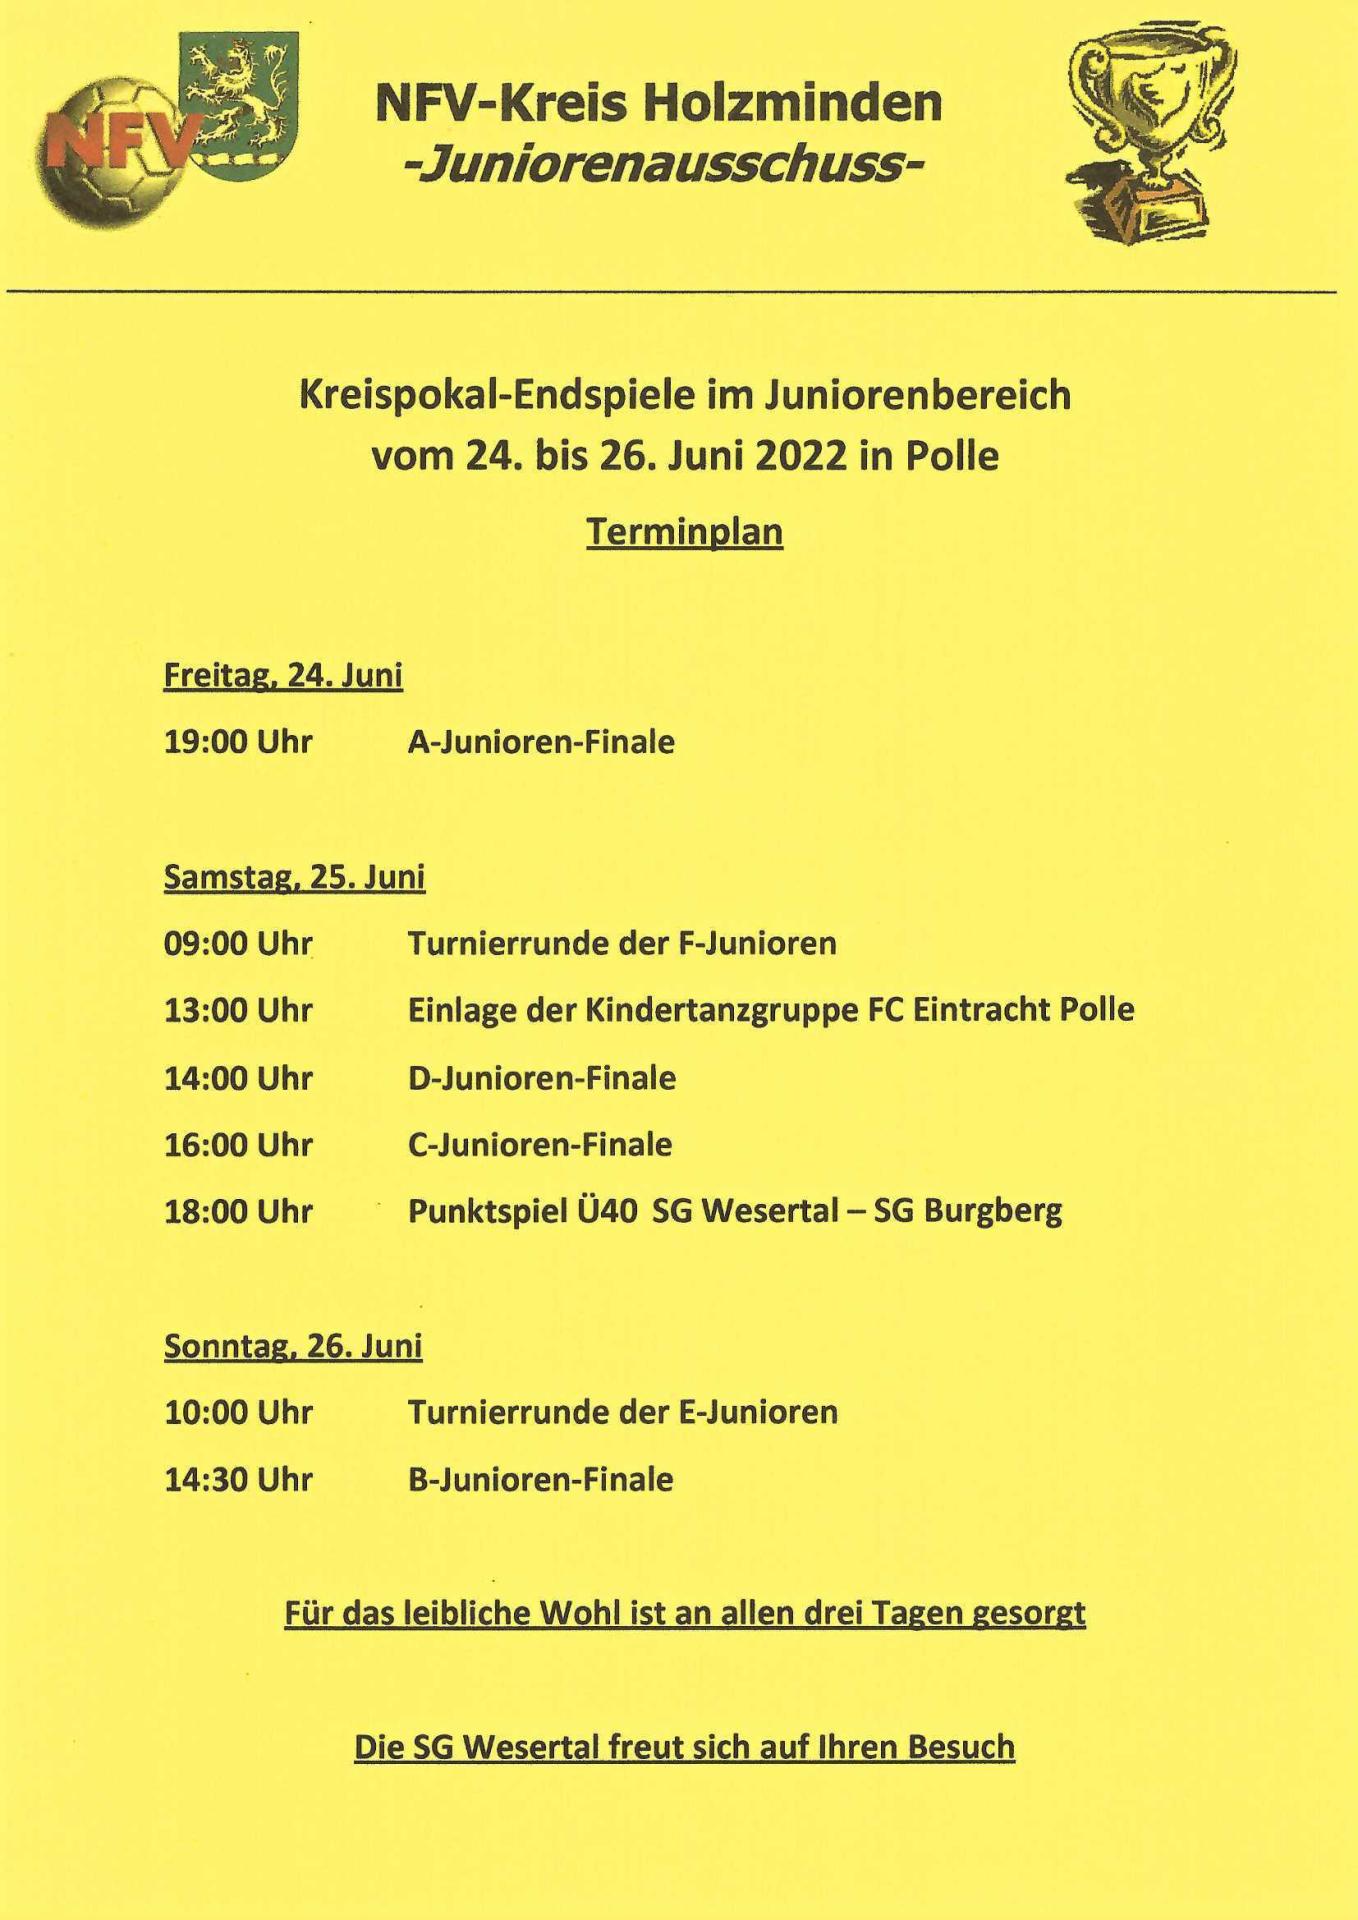 2022.06.16 FC Eintracht Polle - Kreispokal-Endspiele im Juniorenbereich